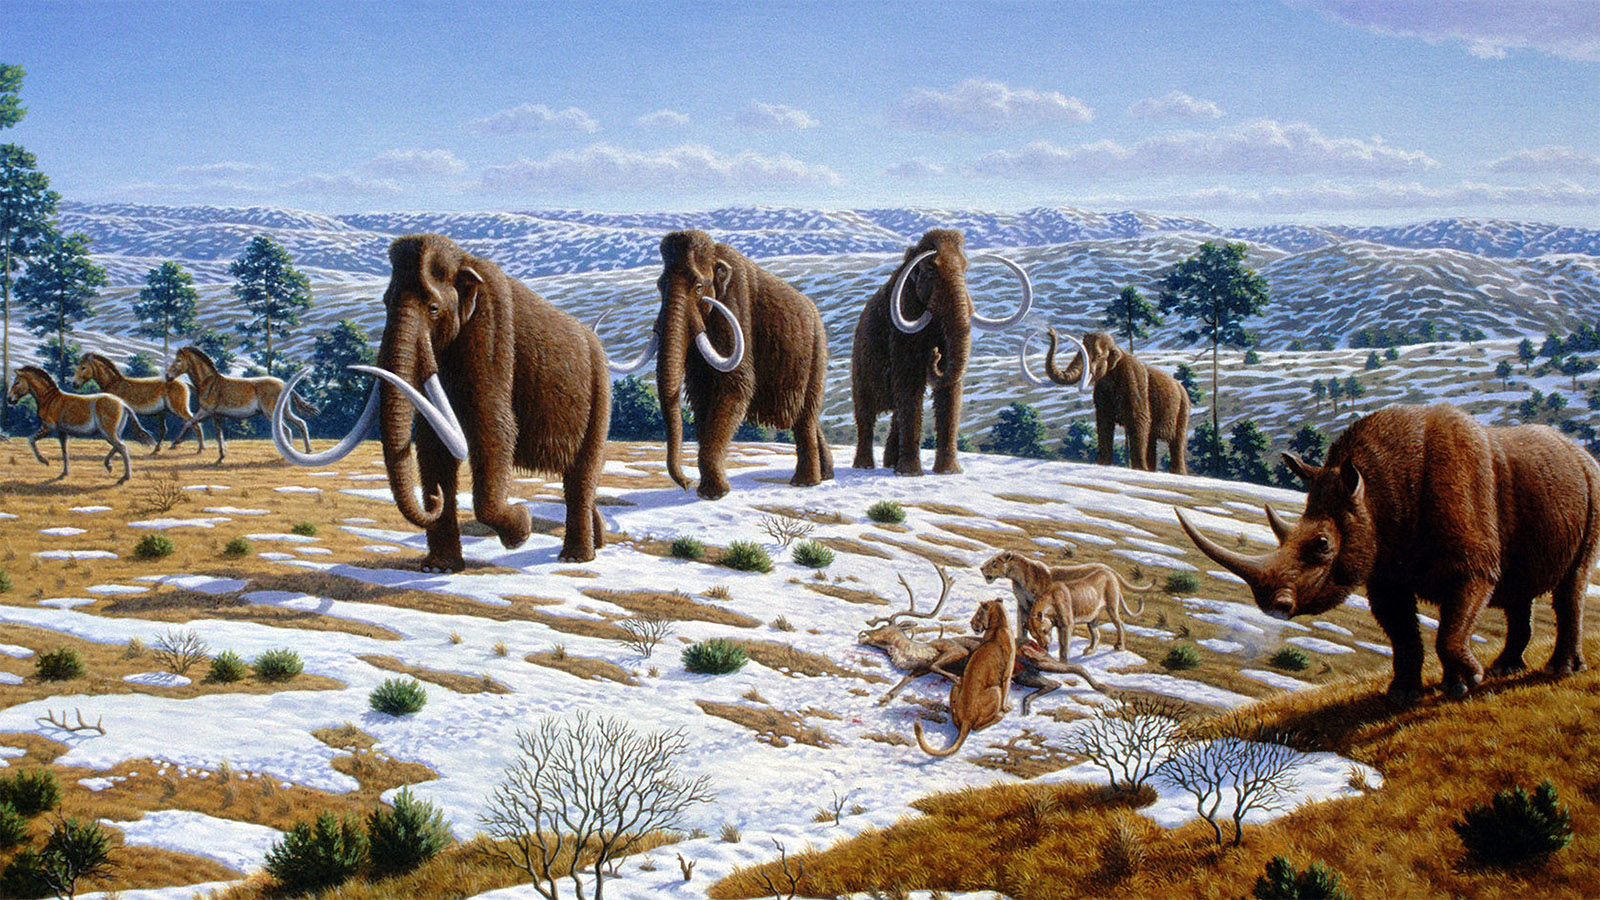 Pleistozäne Fauna in Nordspanien. Illustration: Mauricio Antón